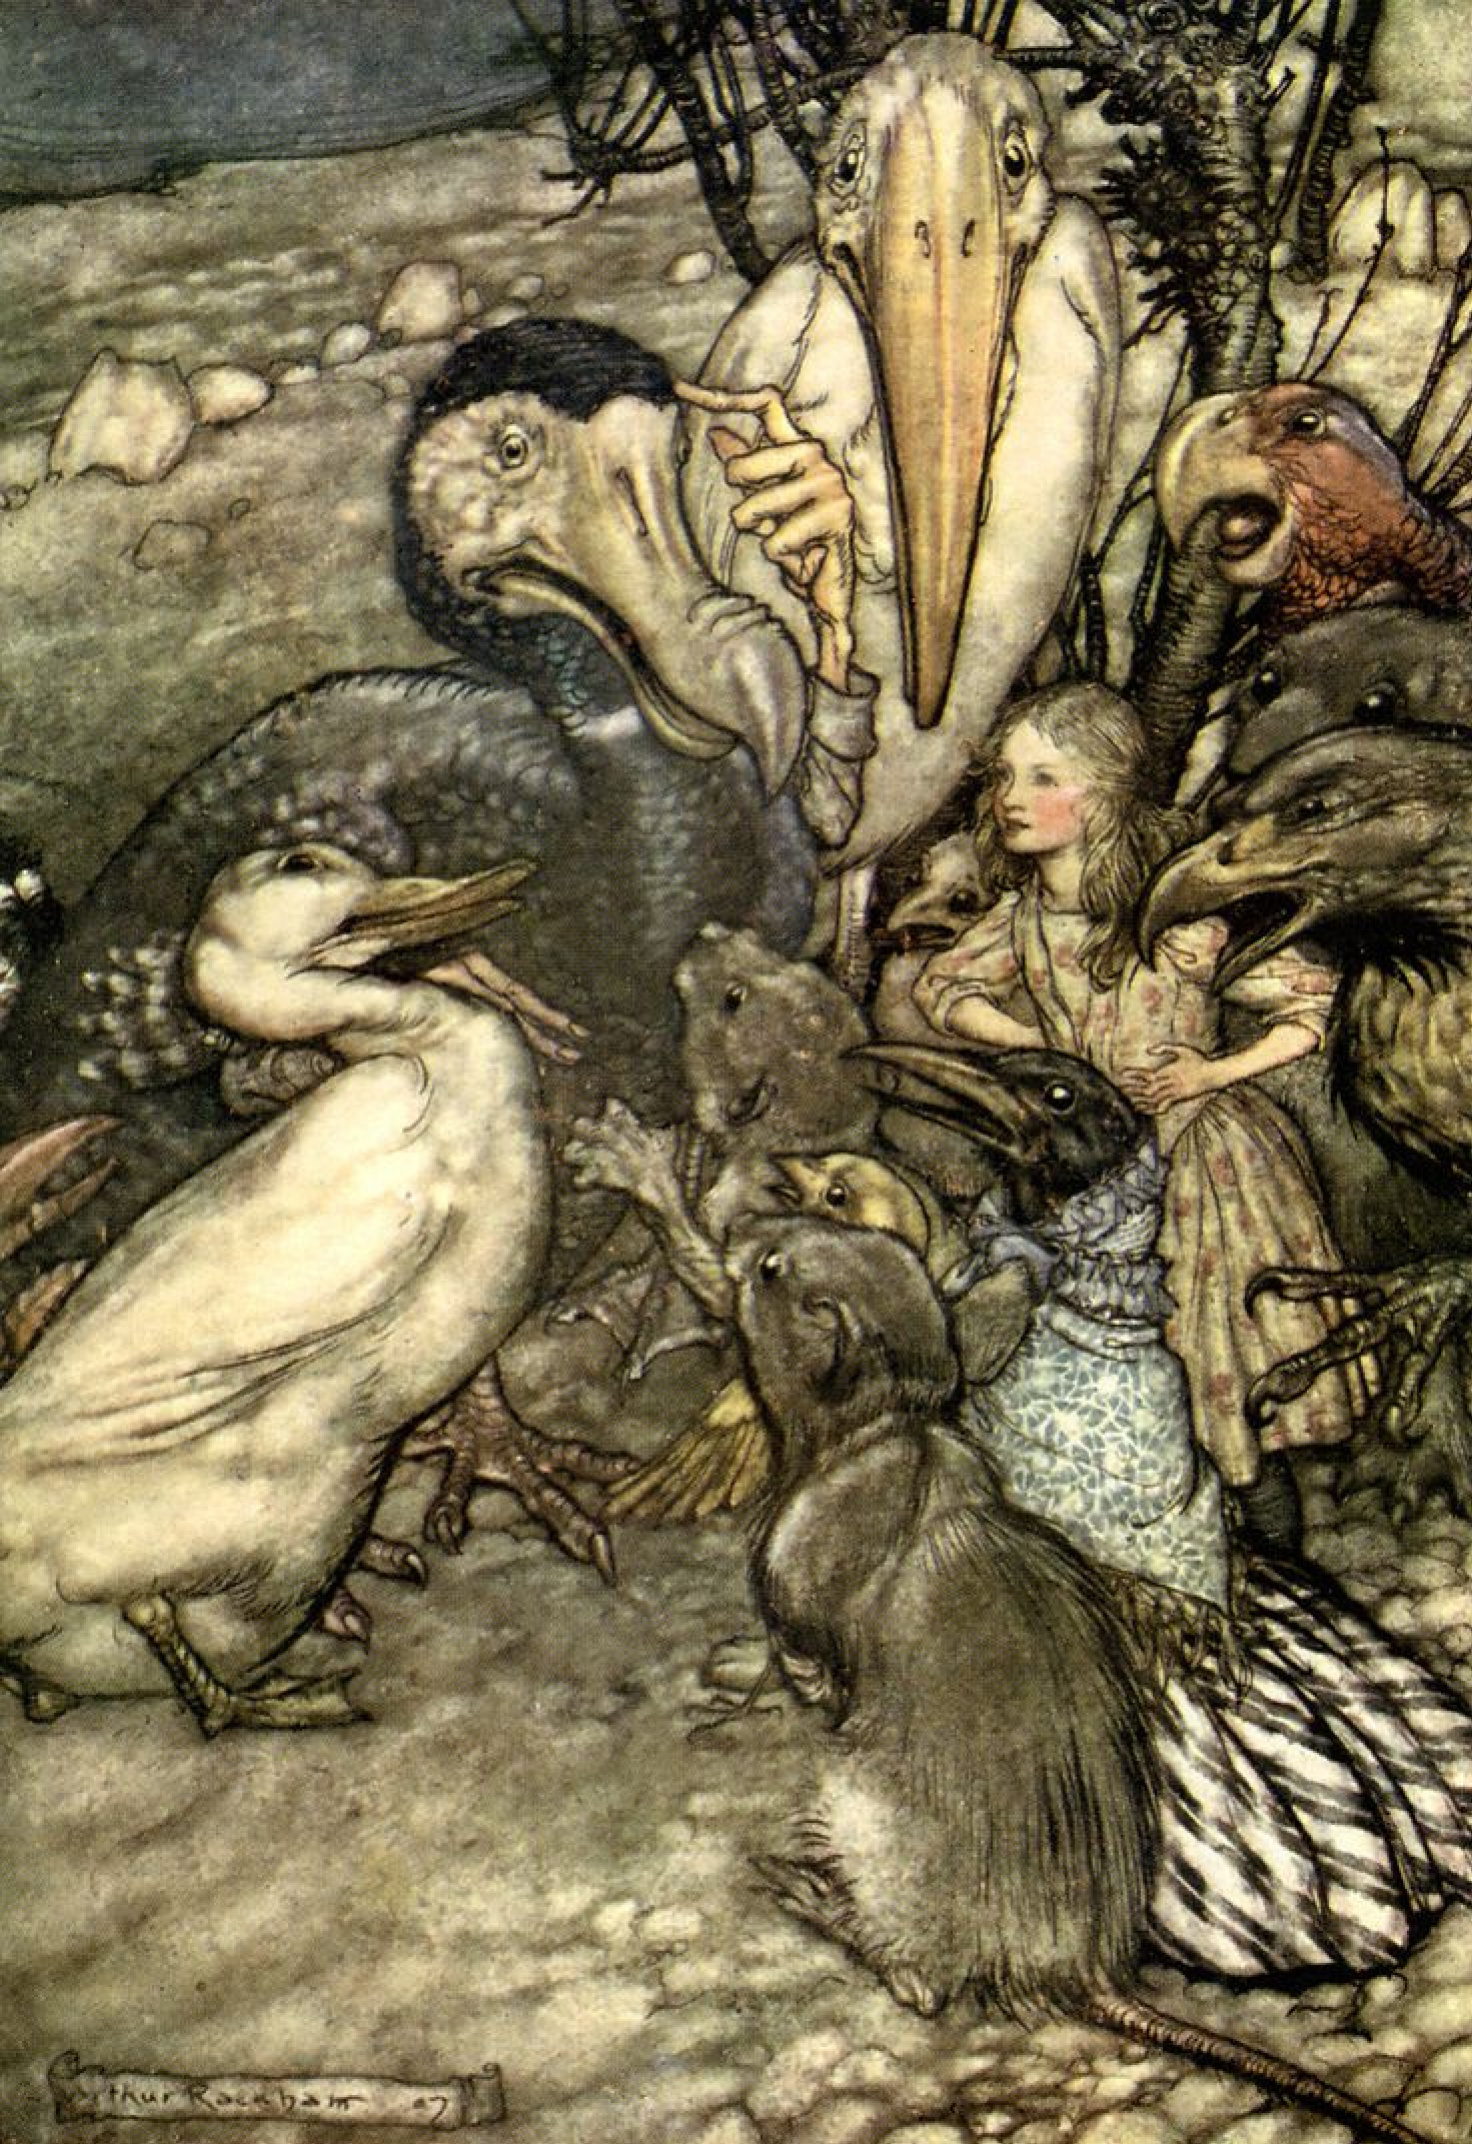 Arthur Rackham Illustration for the tale 